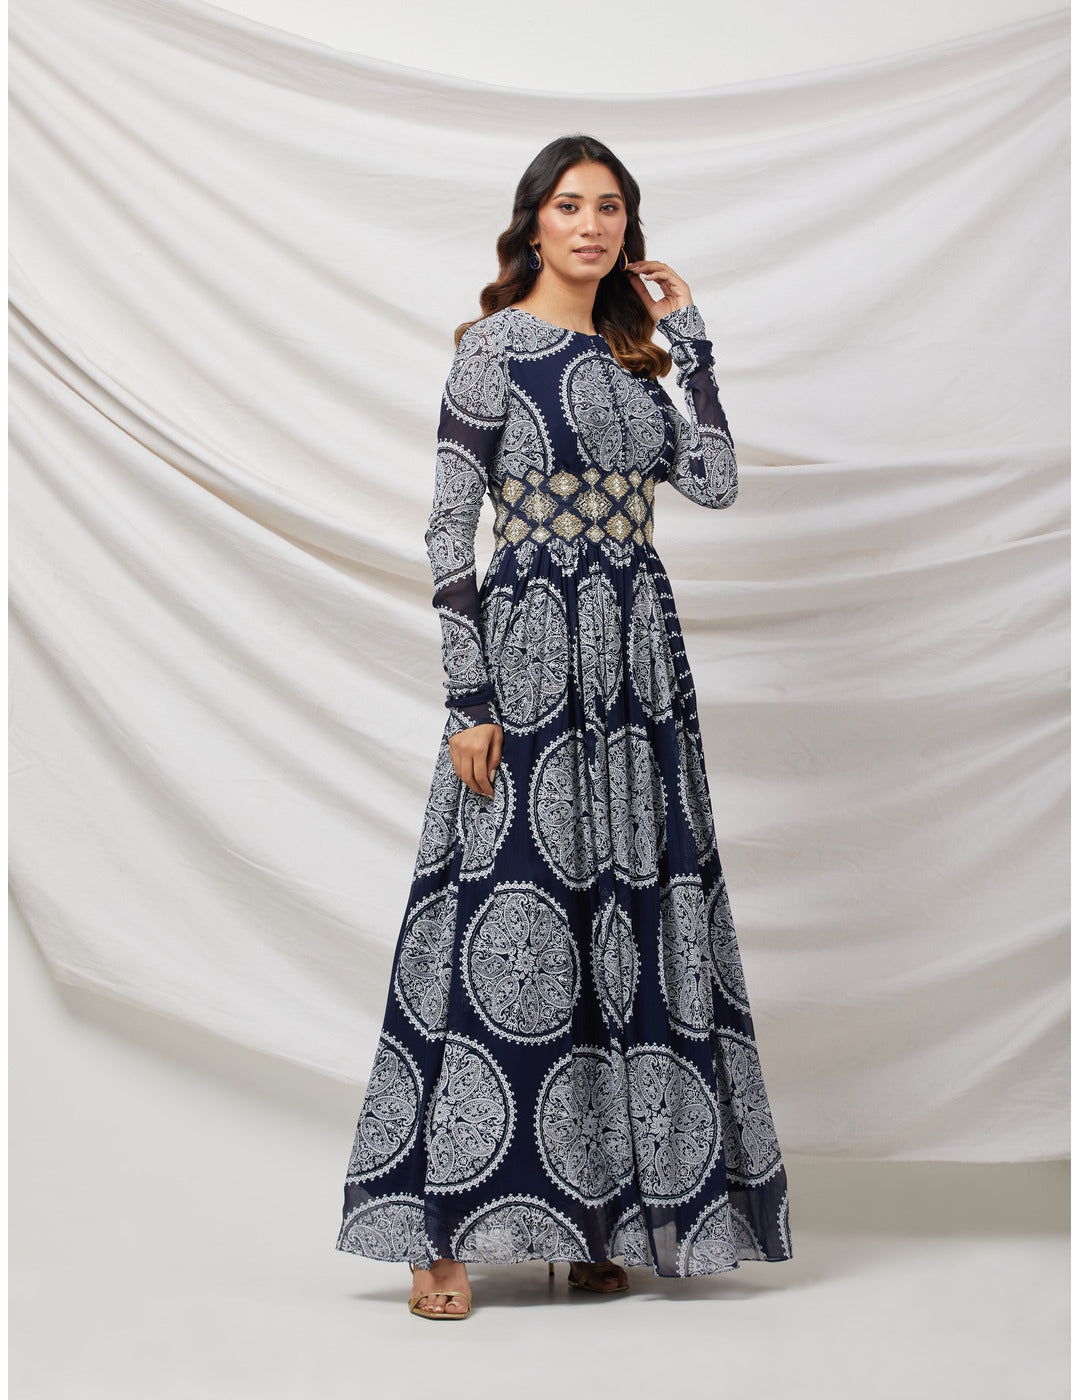 Printed Blue Anarkali set with Embroidered Belt